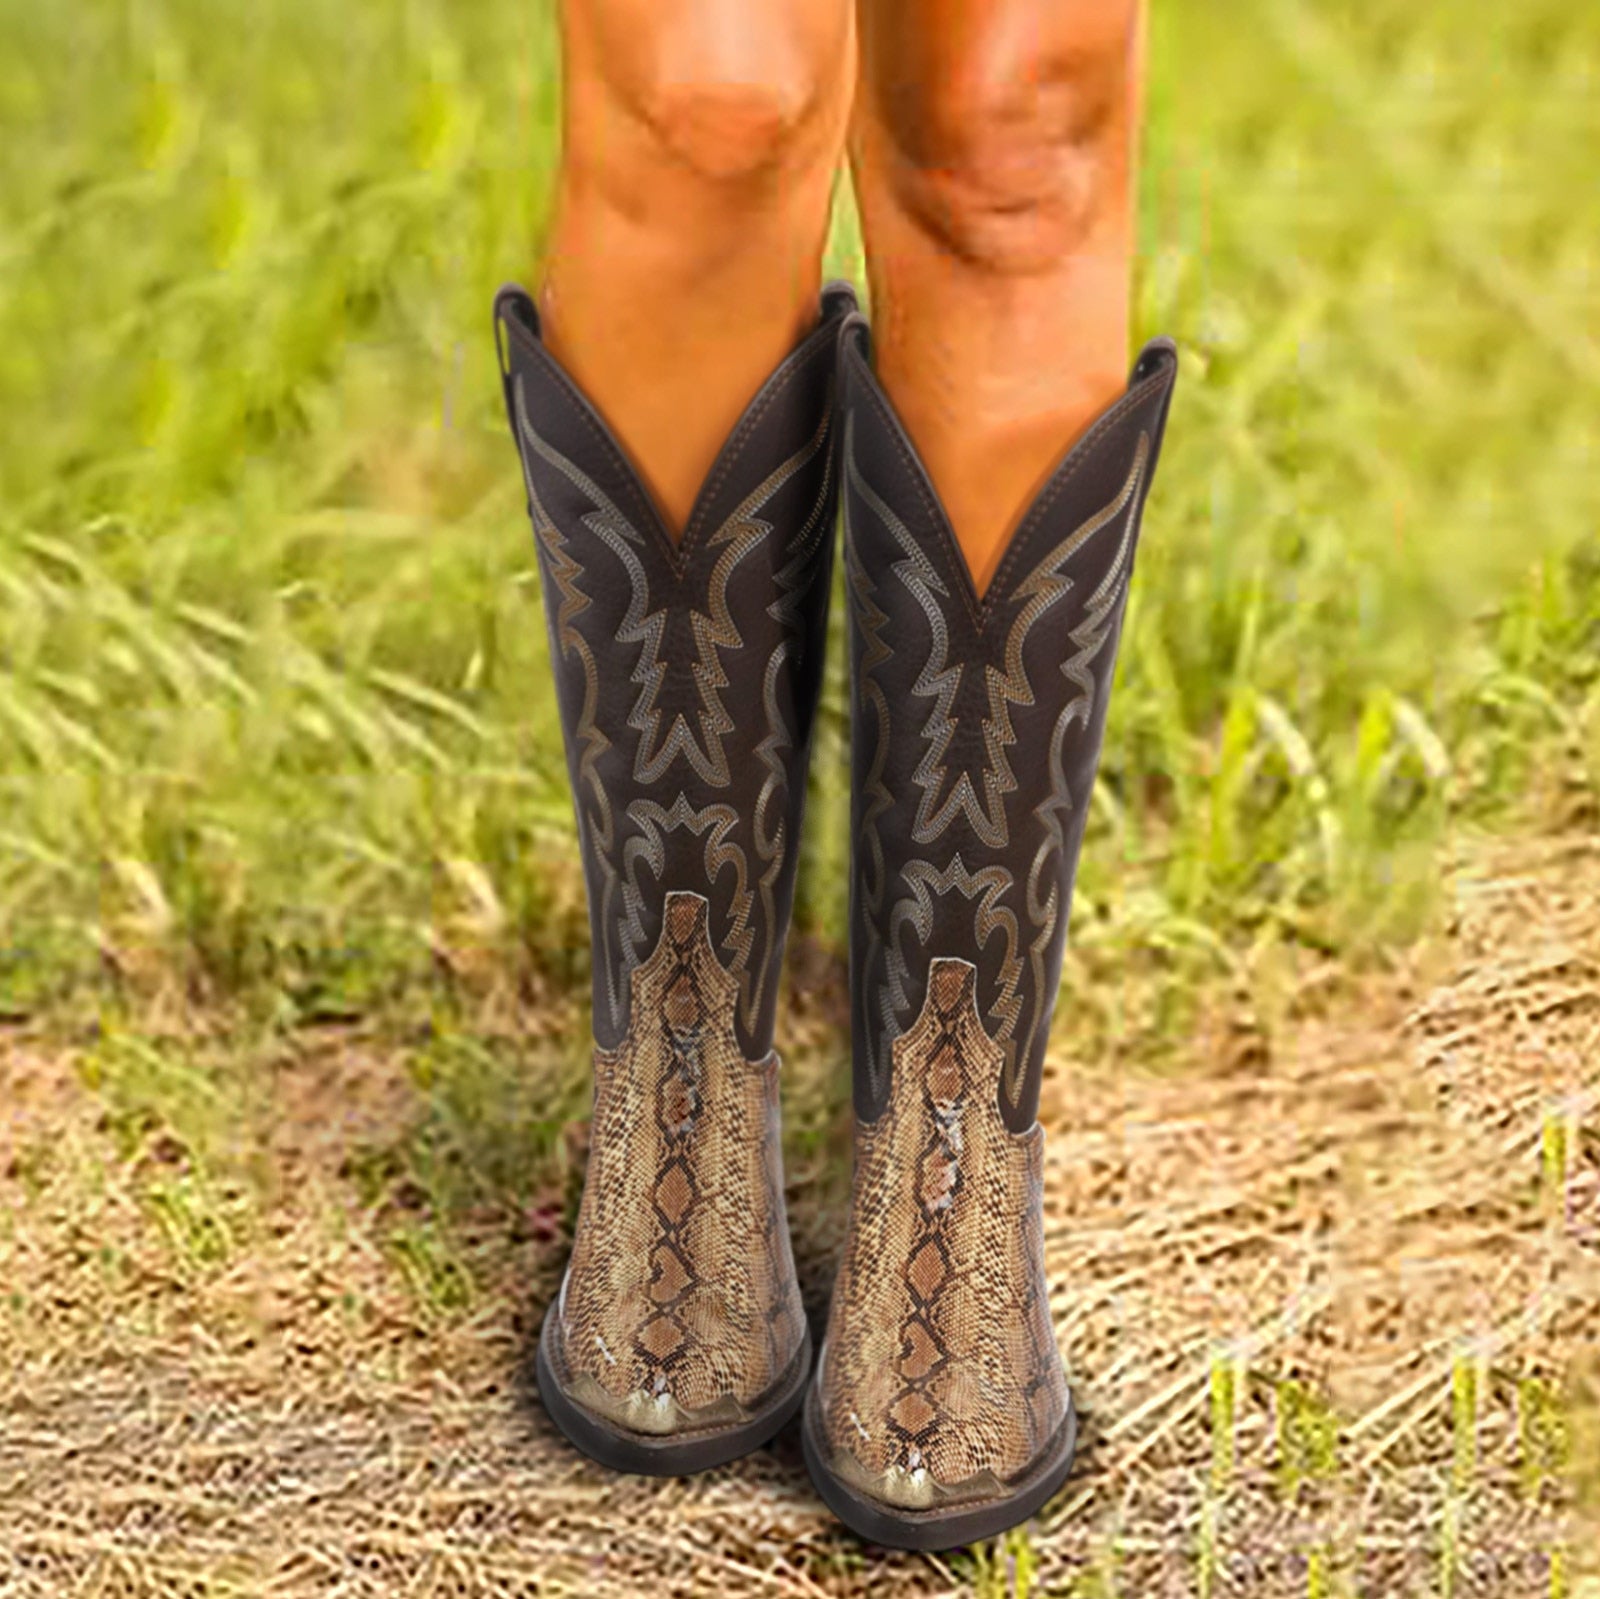 Autumn/Winter Serpentine Western Cowboy Boots - Fashion Damsel